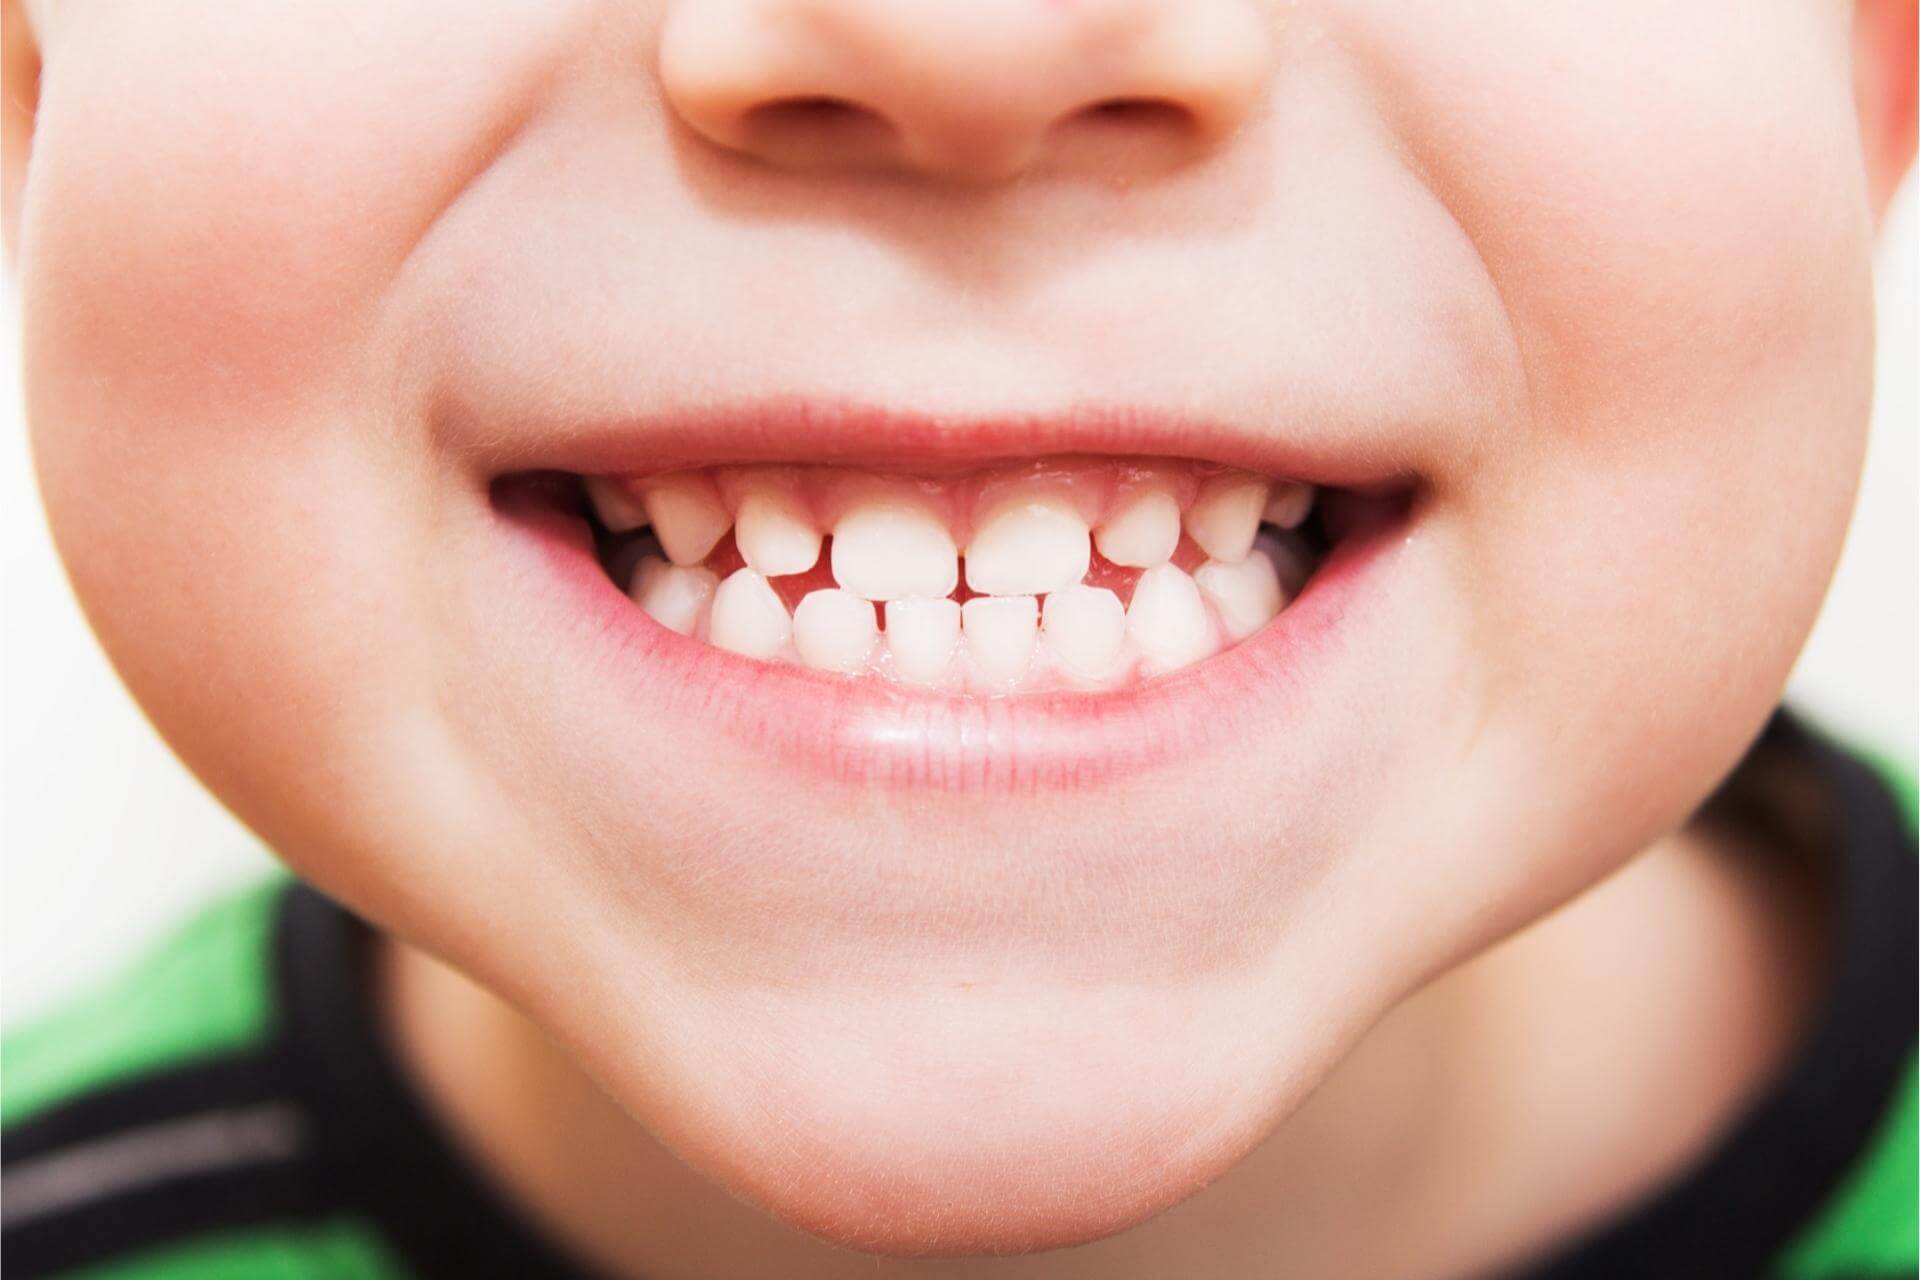 sigillatura-denti-bambini-dentista-carie-prevenzione.jpg